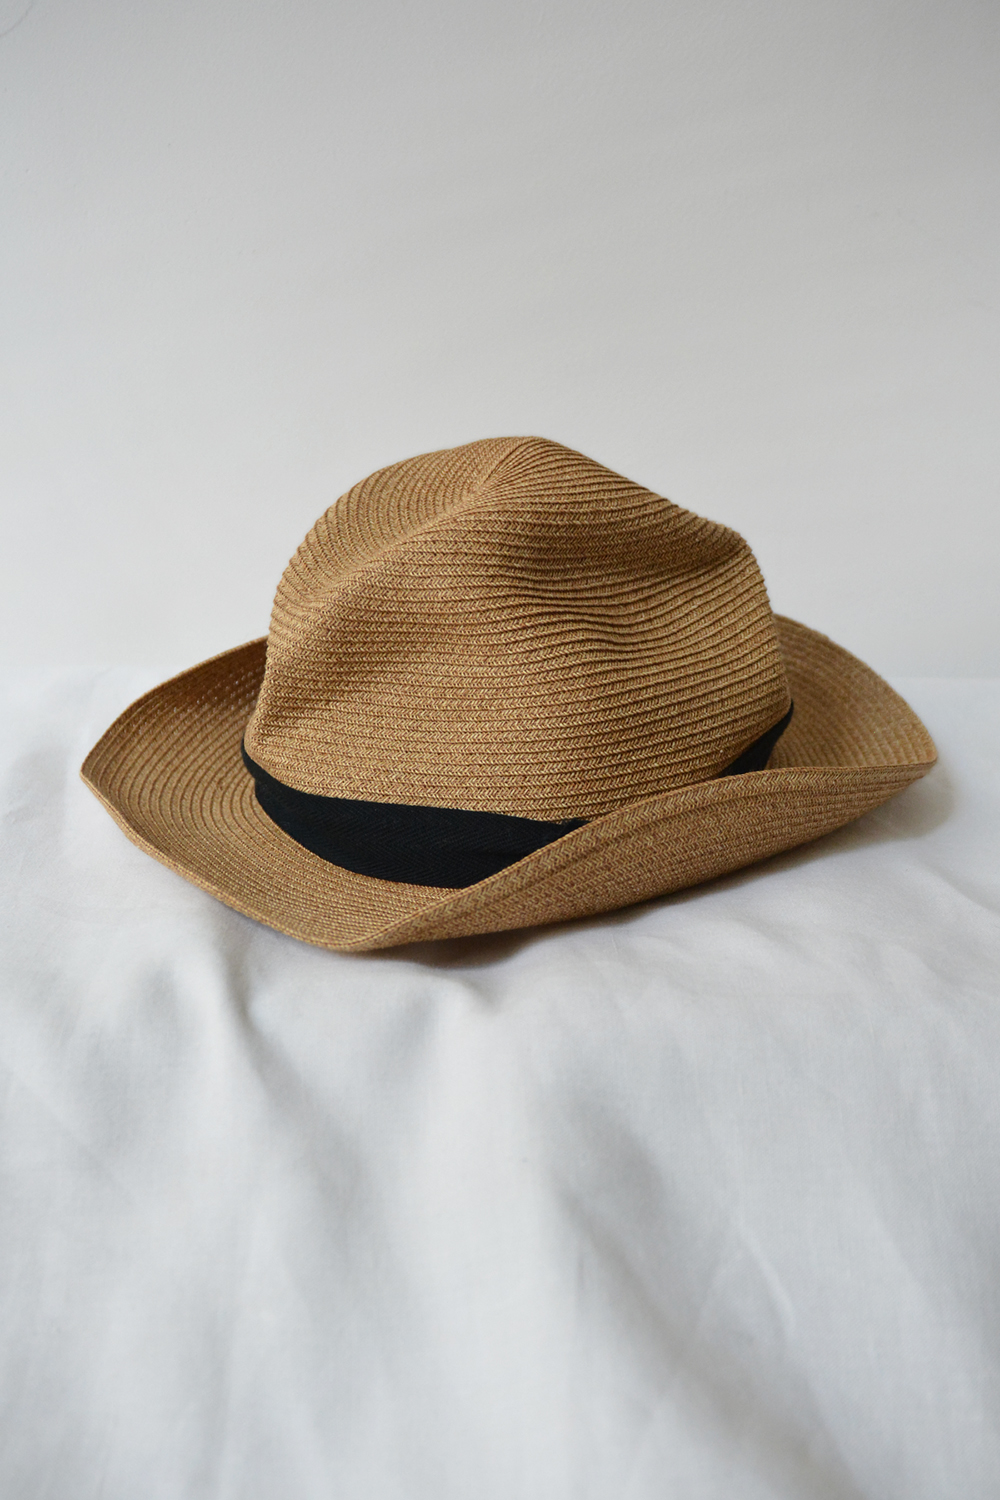 Mature Ha Boxed Hat - Natural w/ Black trim - Makie